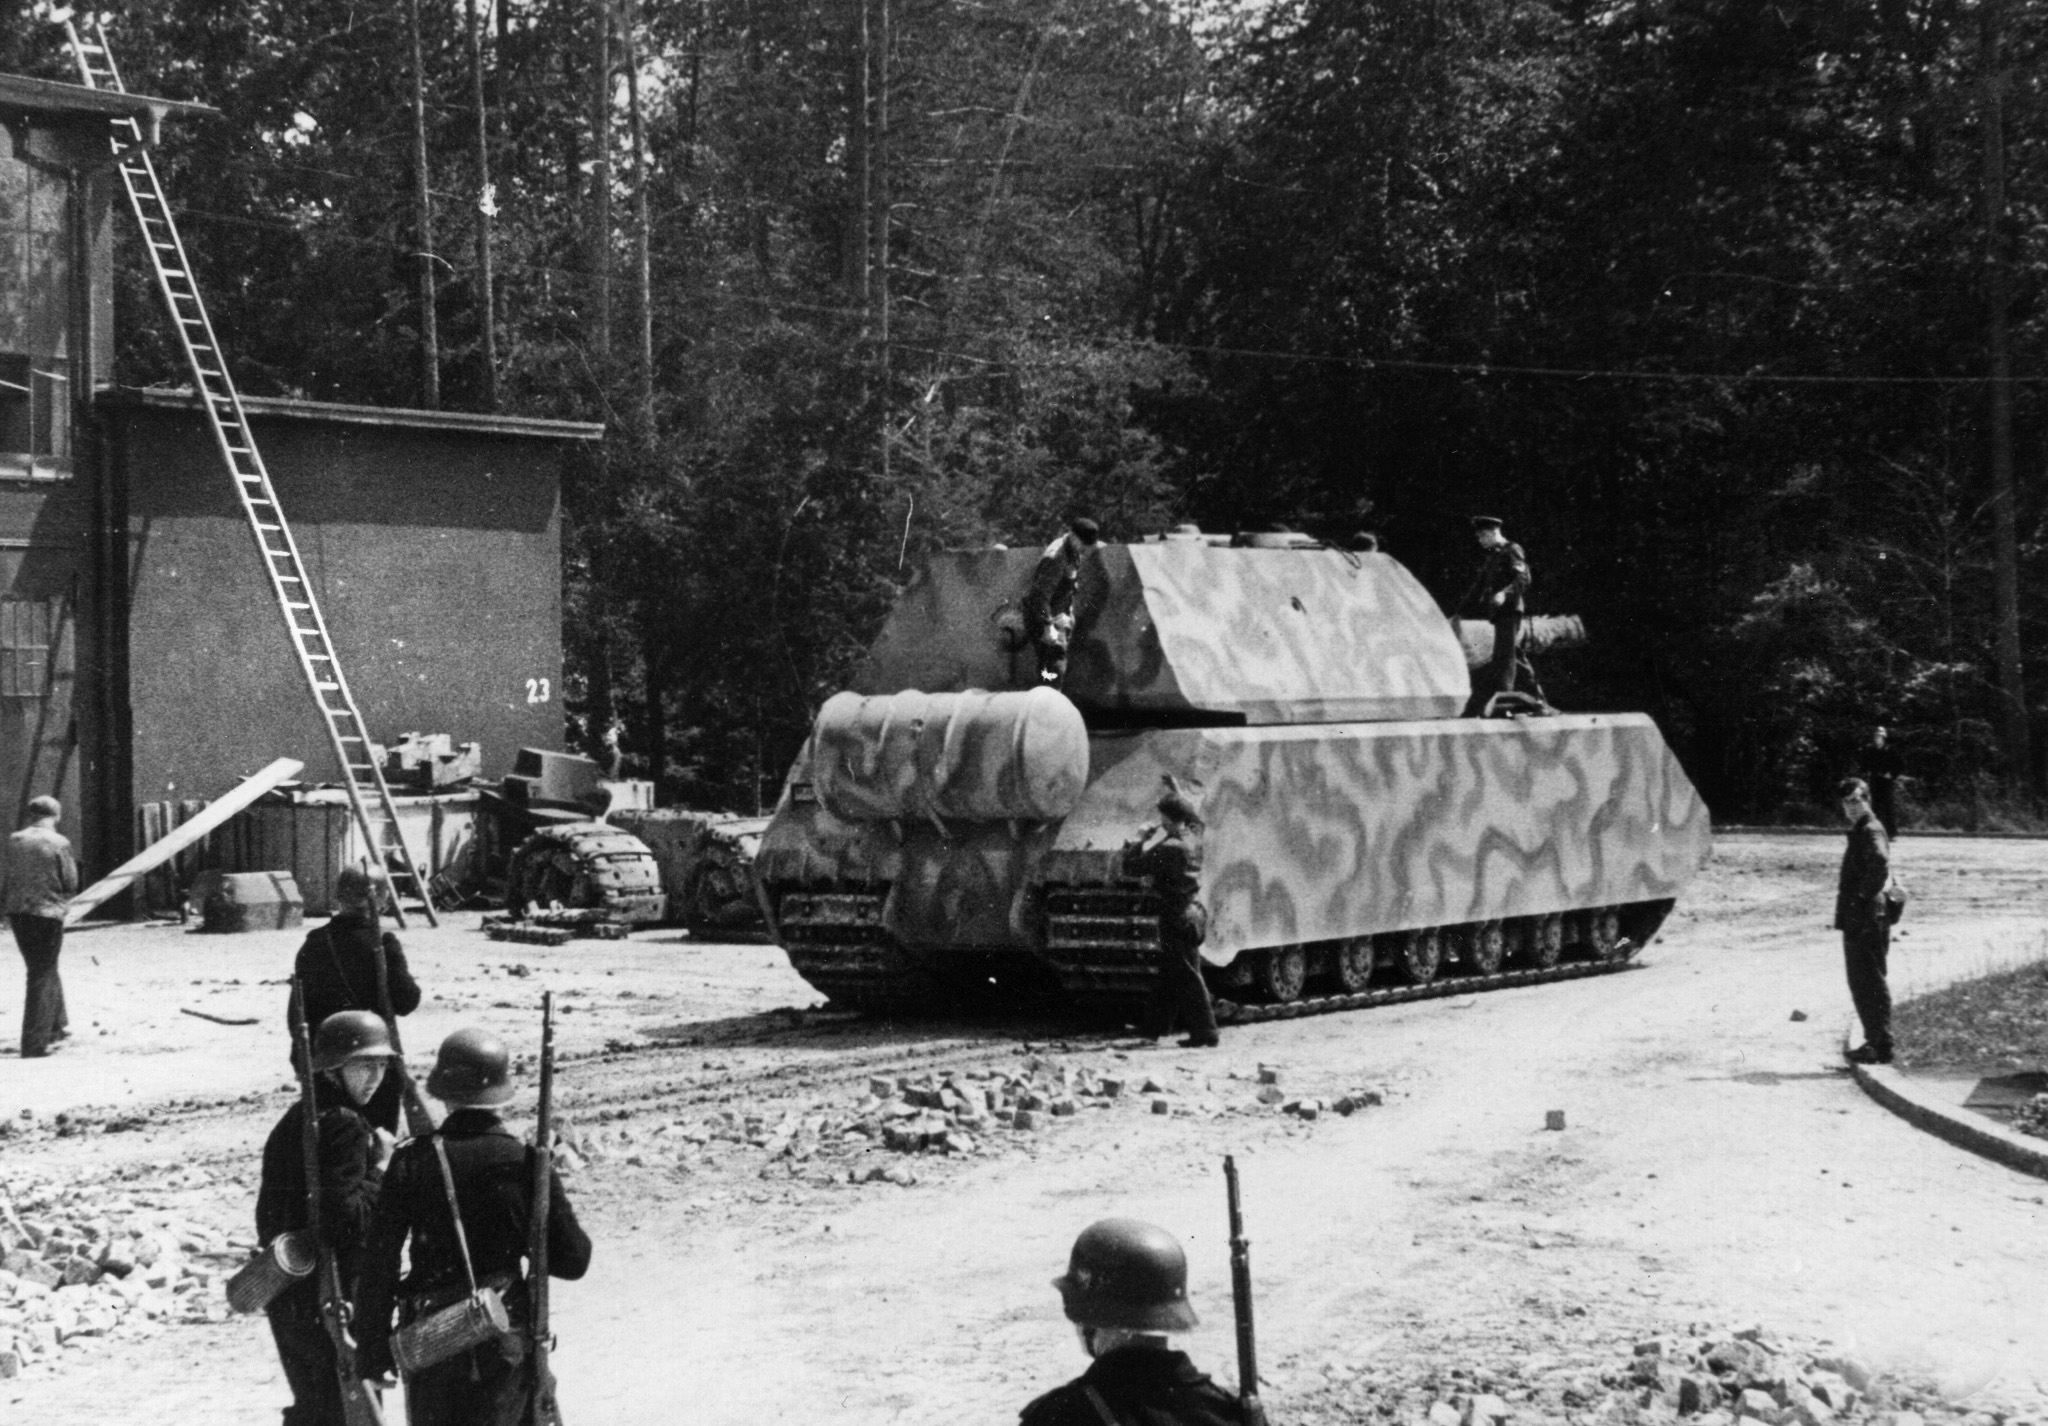 The Panzer VIII Maus: The Heaviest Tank Ever Built